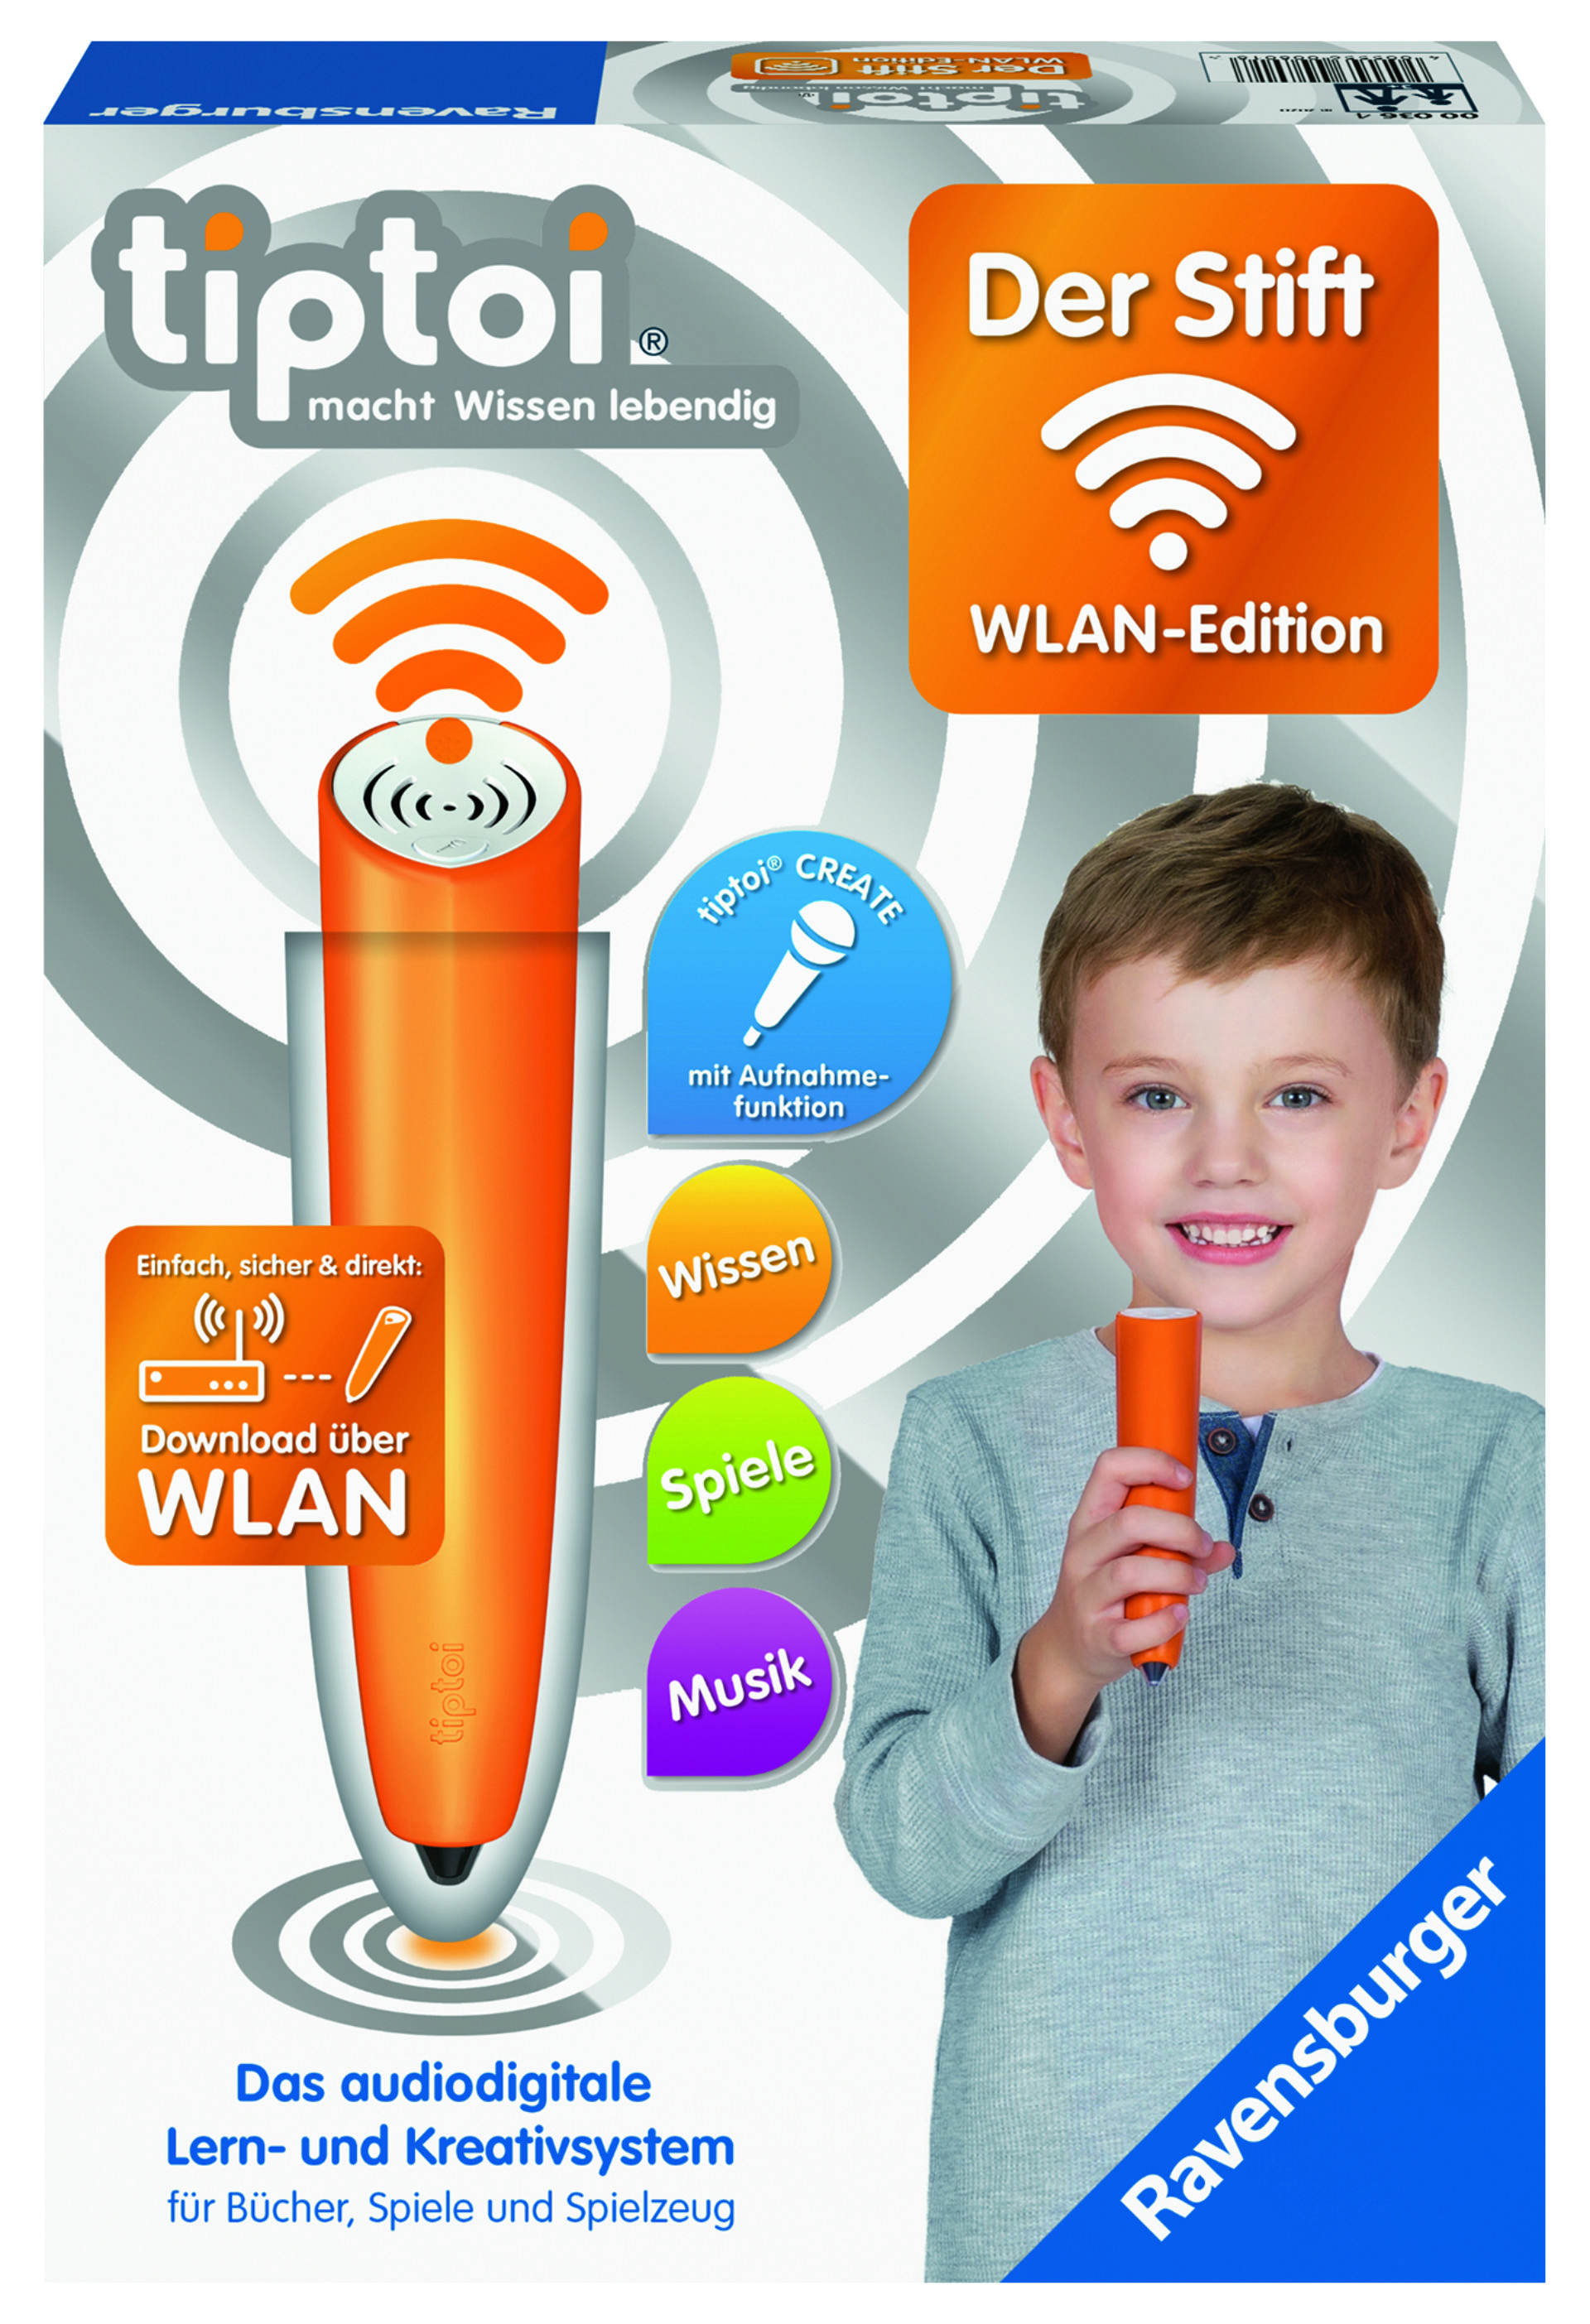 tiptoi® Stift - WLAN-Edition (3. Generation)